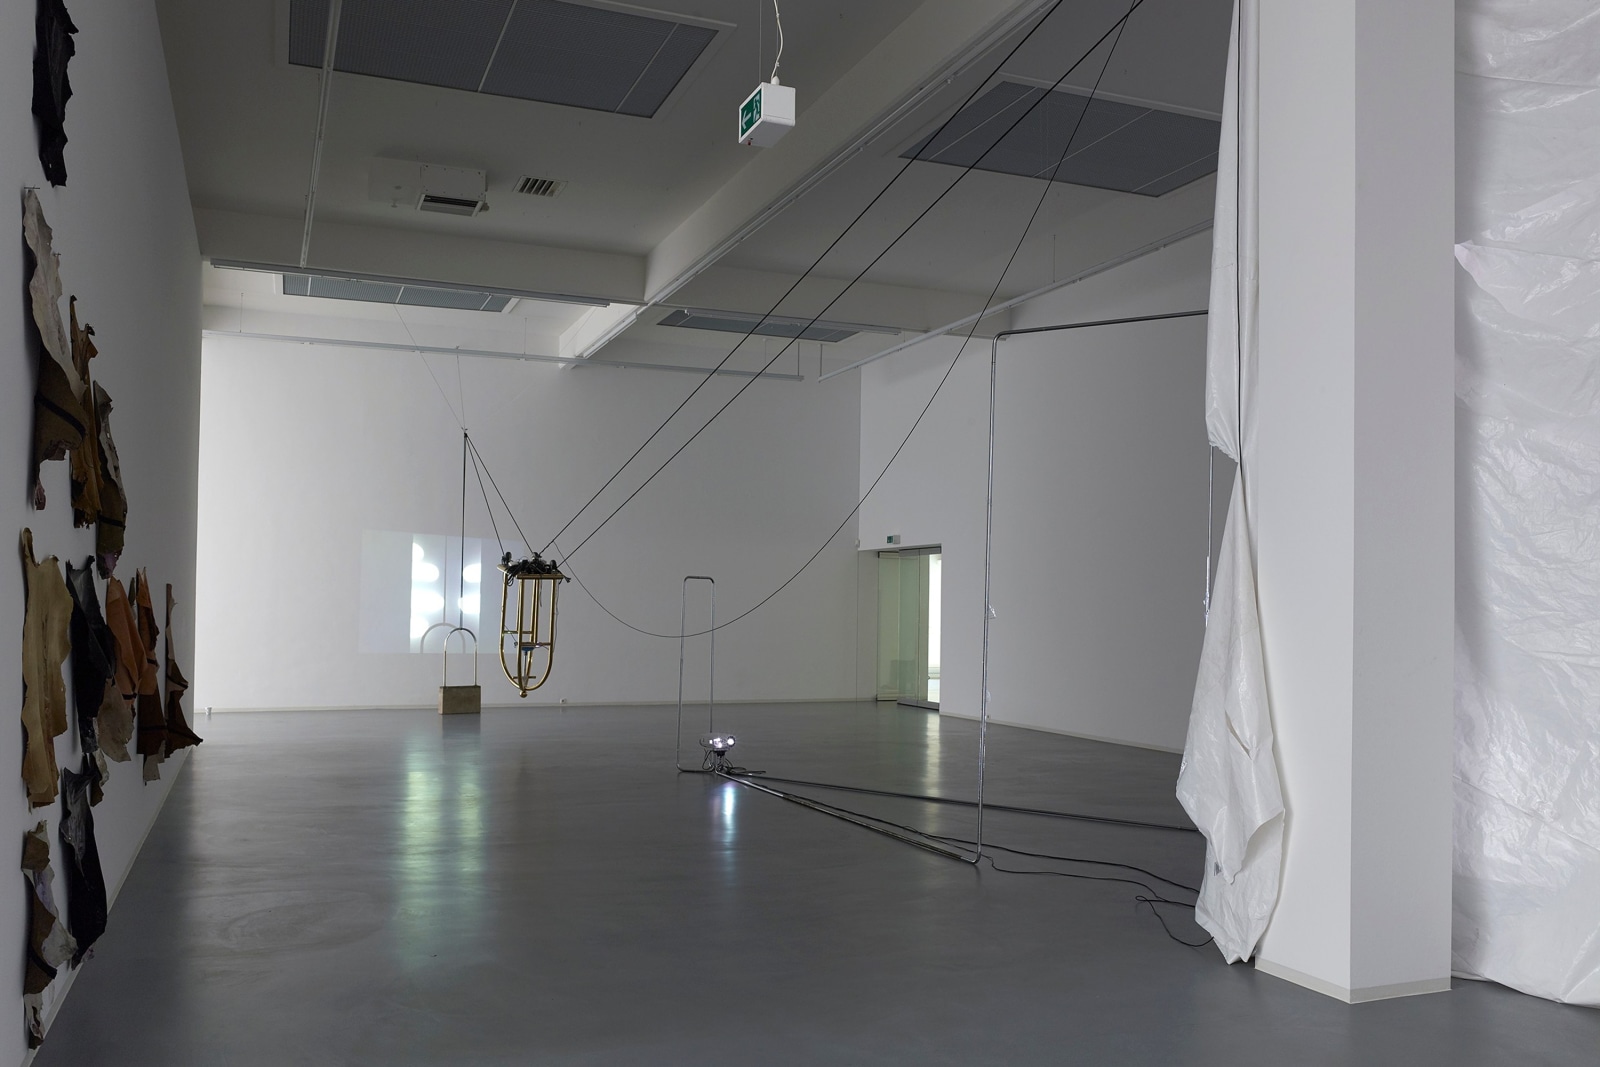 Installation view,&nbsp;Raphaela und der gro&szlig;e Kunstverein, Bonner Kunstverein, Bonn, 2015. Photo: Simon Vogel, Cologne.